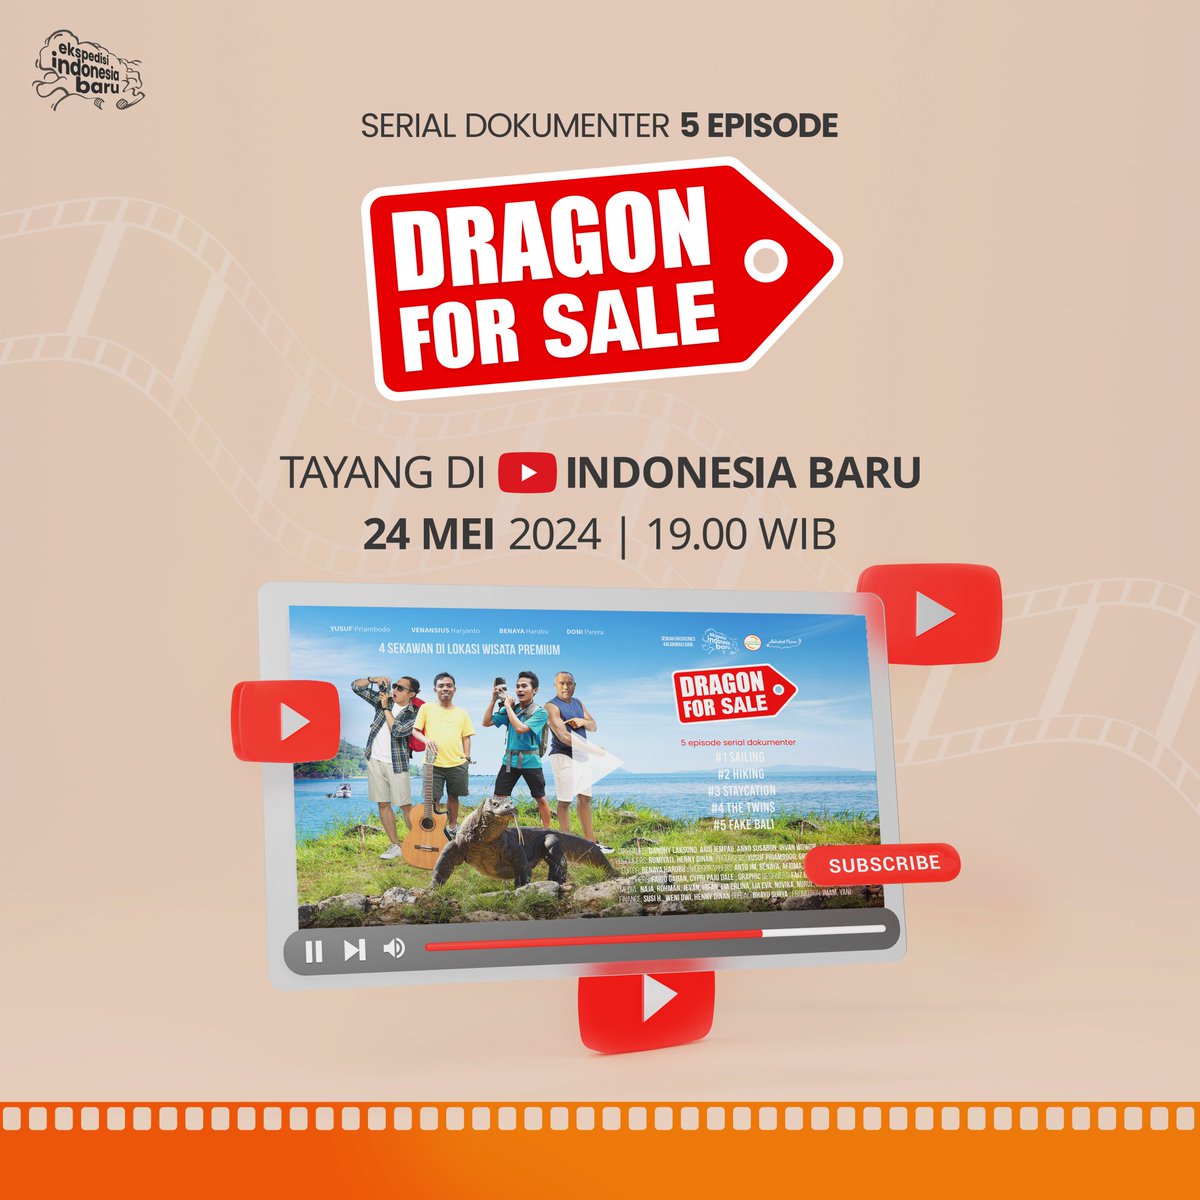 Kabar gembira! Serial dokumenter 5 episode Dragon for Sale bisa disaksikan di YouTube Indonesia Baru mulai malam ini.

Pulau Komodo dan Labuan Bajo dinobatkan sebagai destinasi wisata 'Super Premium' dan direncanakan oleh pemerintahan Joko Widodo sebagai 'Bali Baru'. Film